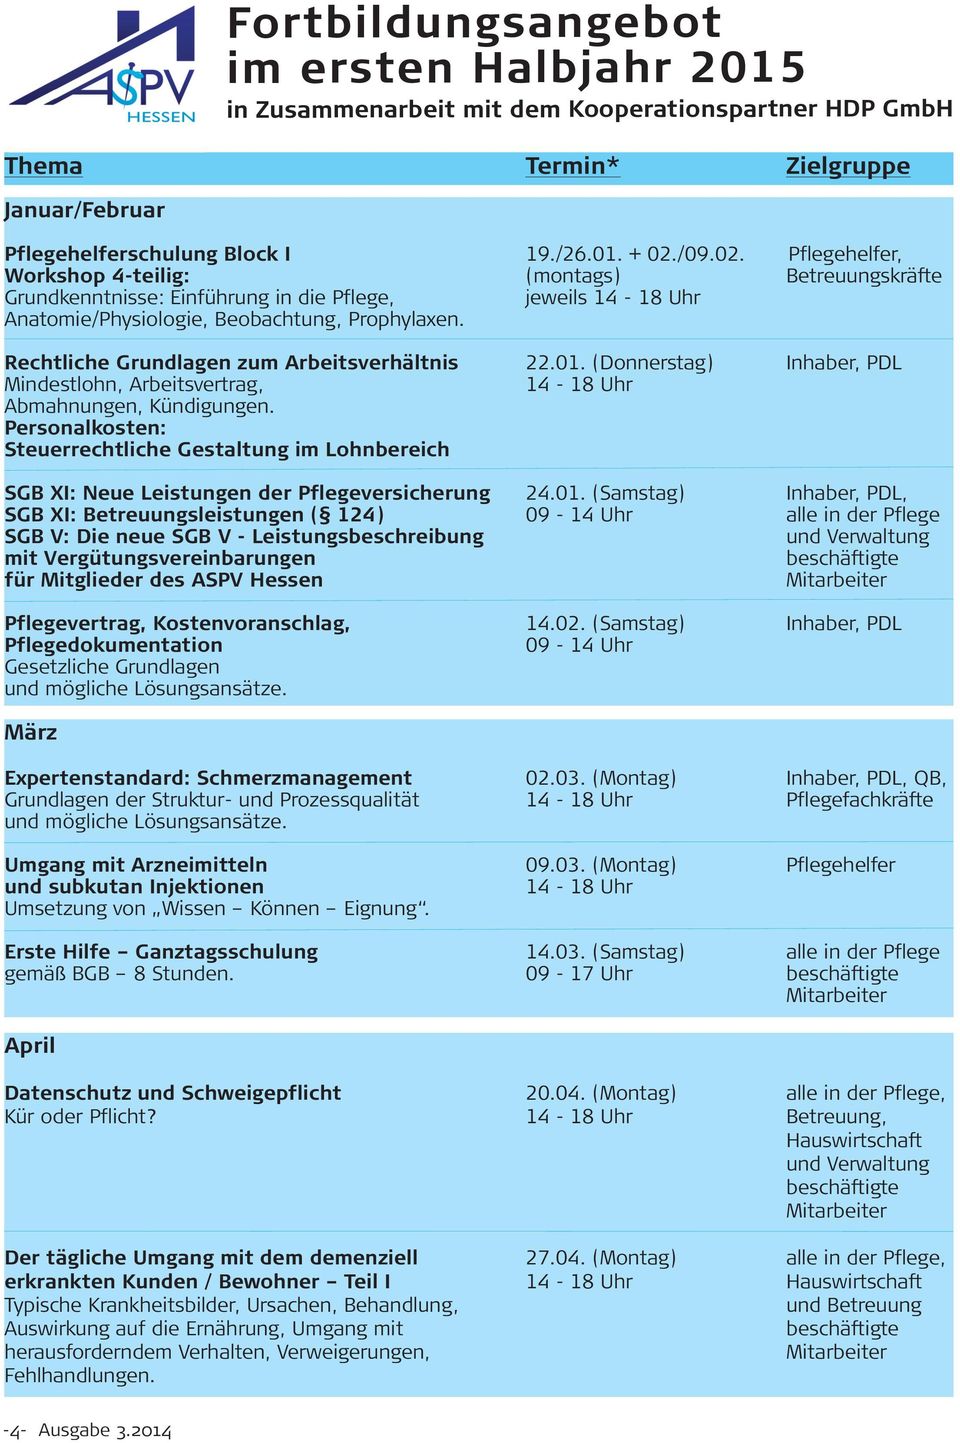 Rechtliche Grundlagen zum Arbeitsverhältnis 22.01. (Donnerstag) Inhaber, PDL Mindestlohn, Arbeitsvertrag, 14-18 Uhr Abmahnungen, Kündigungen.